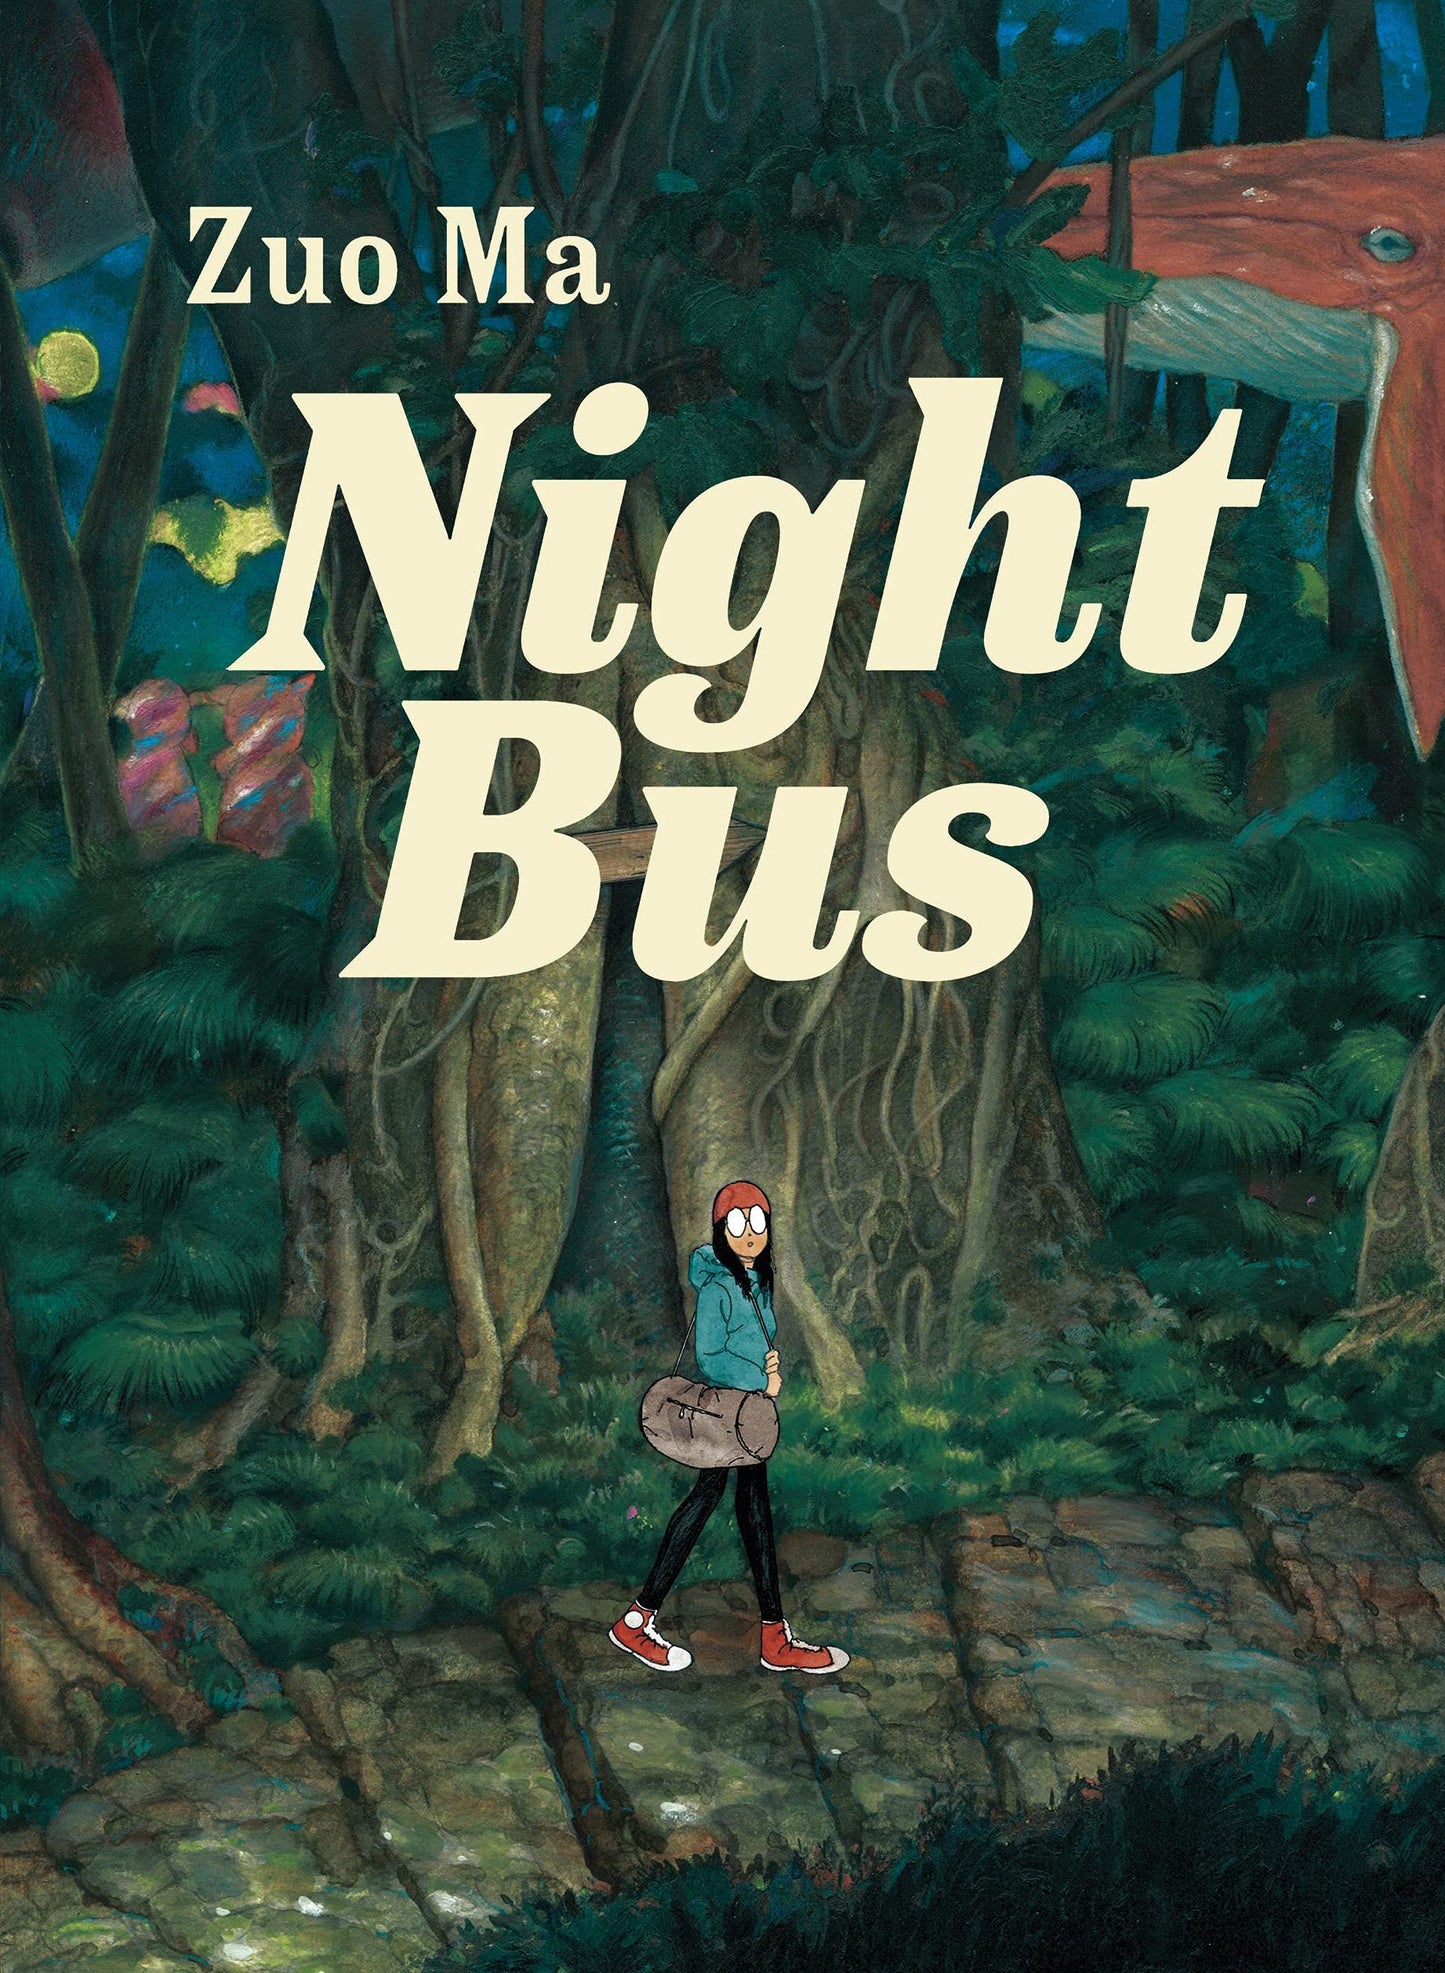 Night Bus by Zou Ma